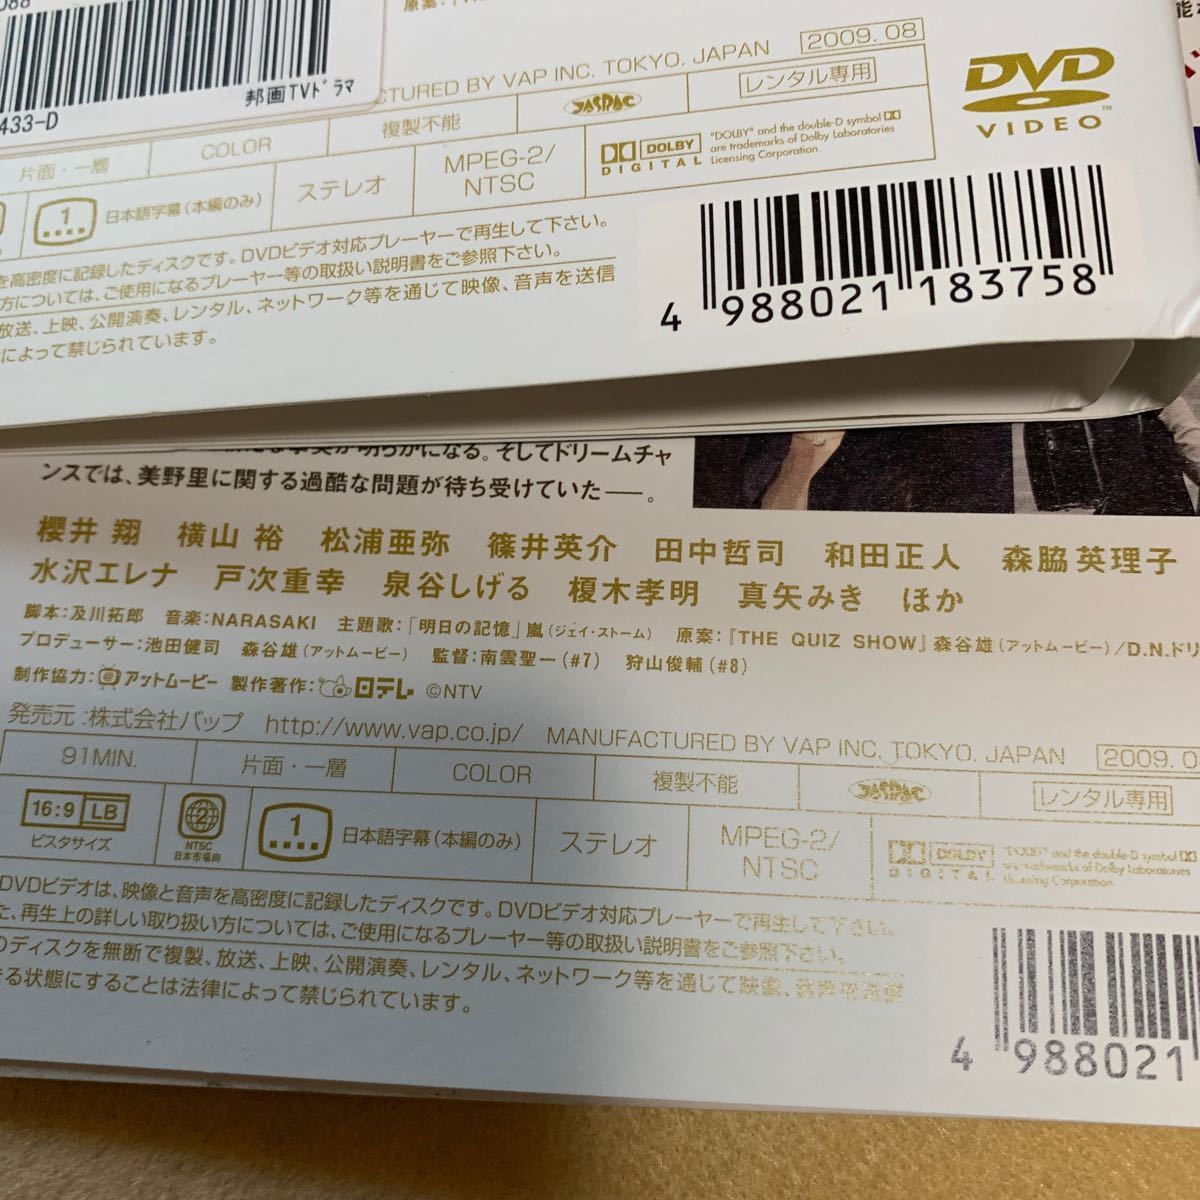 ザ・クイズショウ 2009 全5巻 レンタル版DVD 櫻井翔/横山裕/松浦亜弥